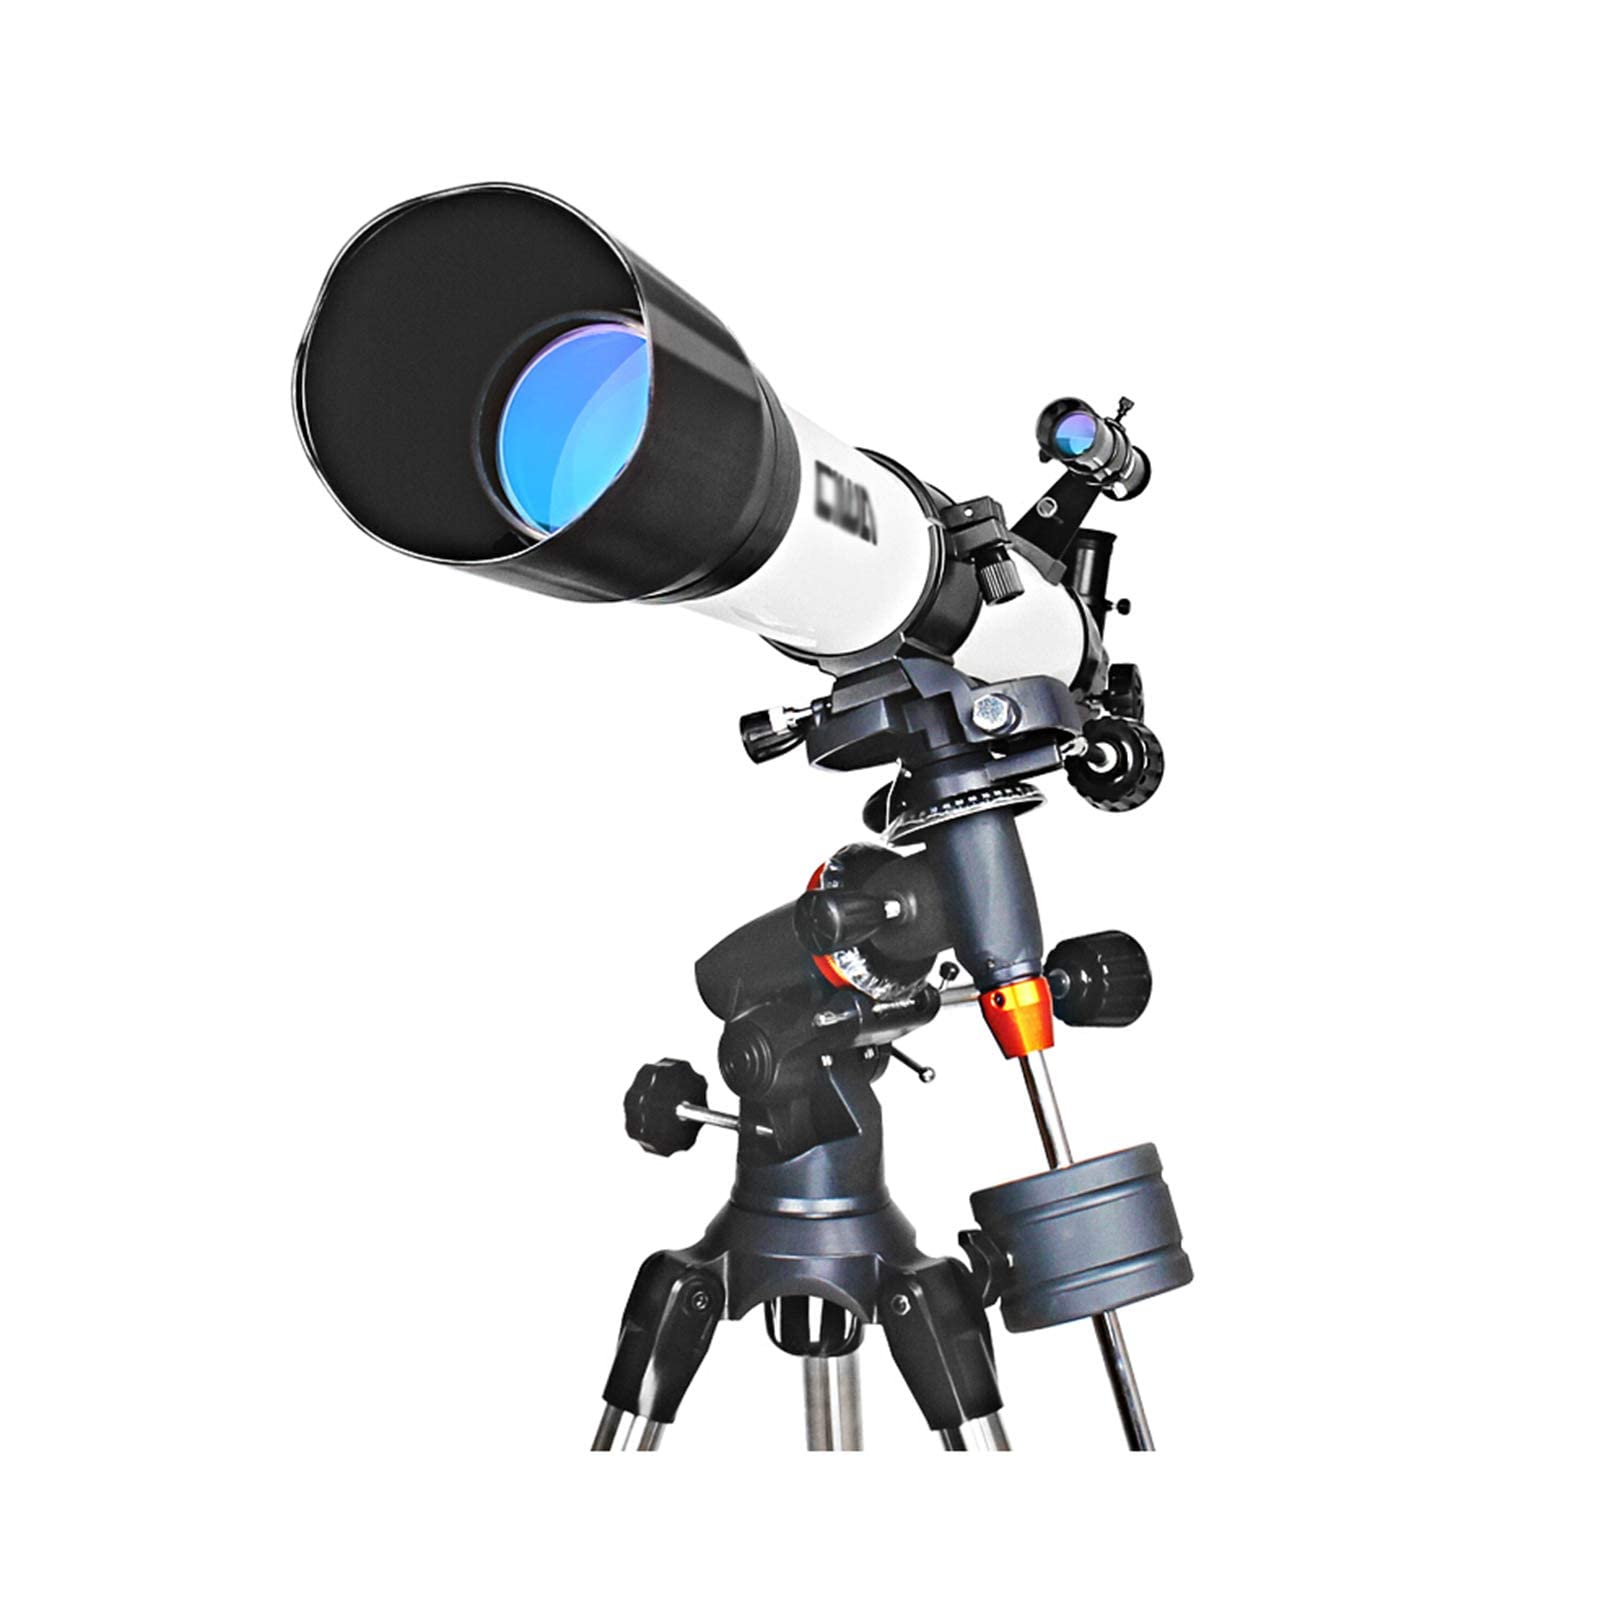 Teleskope, Astronomie-Refraktor-Teleskop mit 1000 mm Brennweite, kompaktes und tragbares Reiseteleskop, höhenverstellbares Stativ, für Kinderanfänger